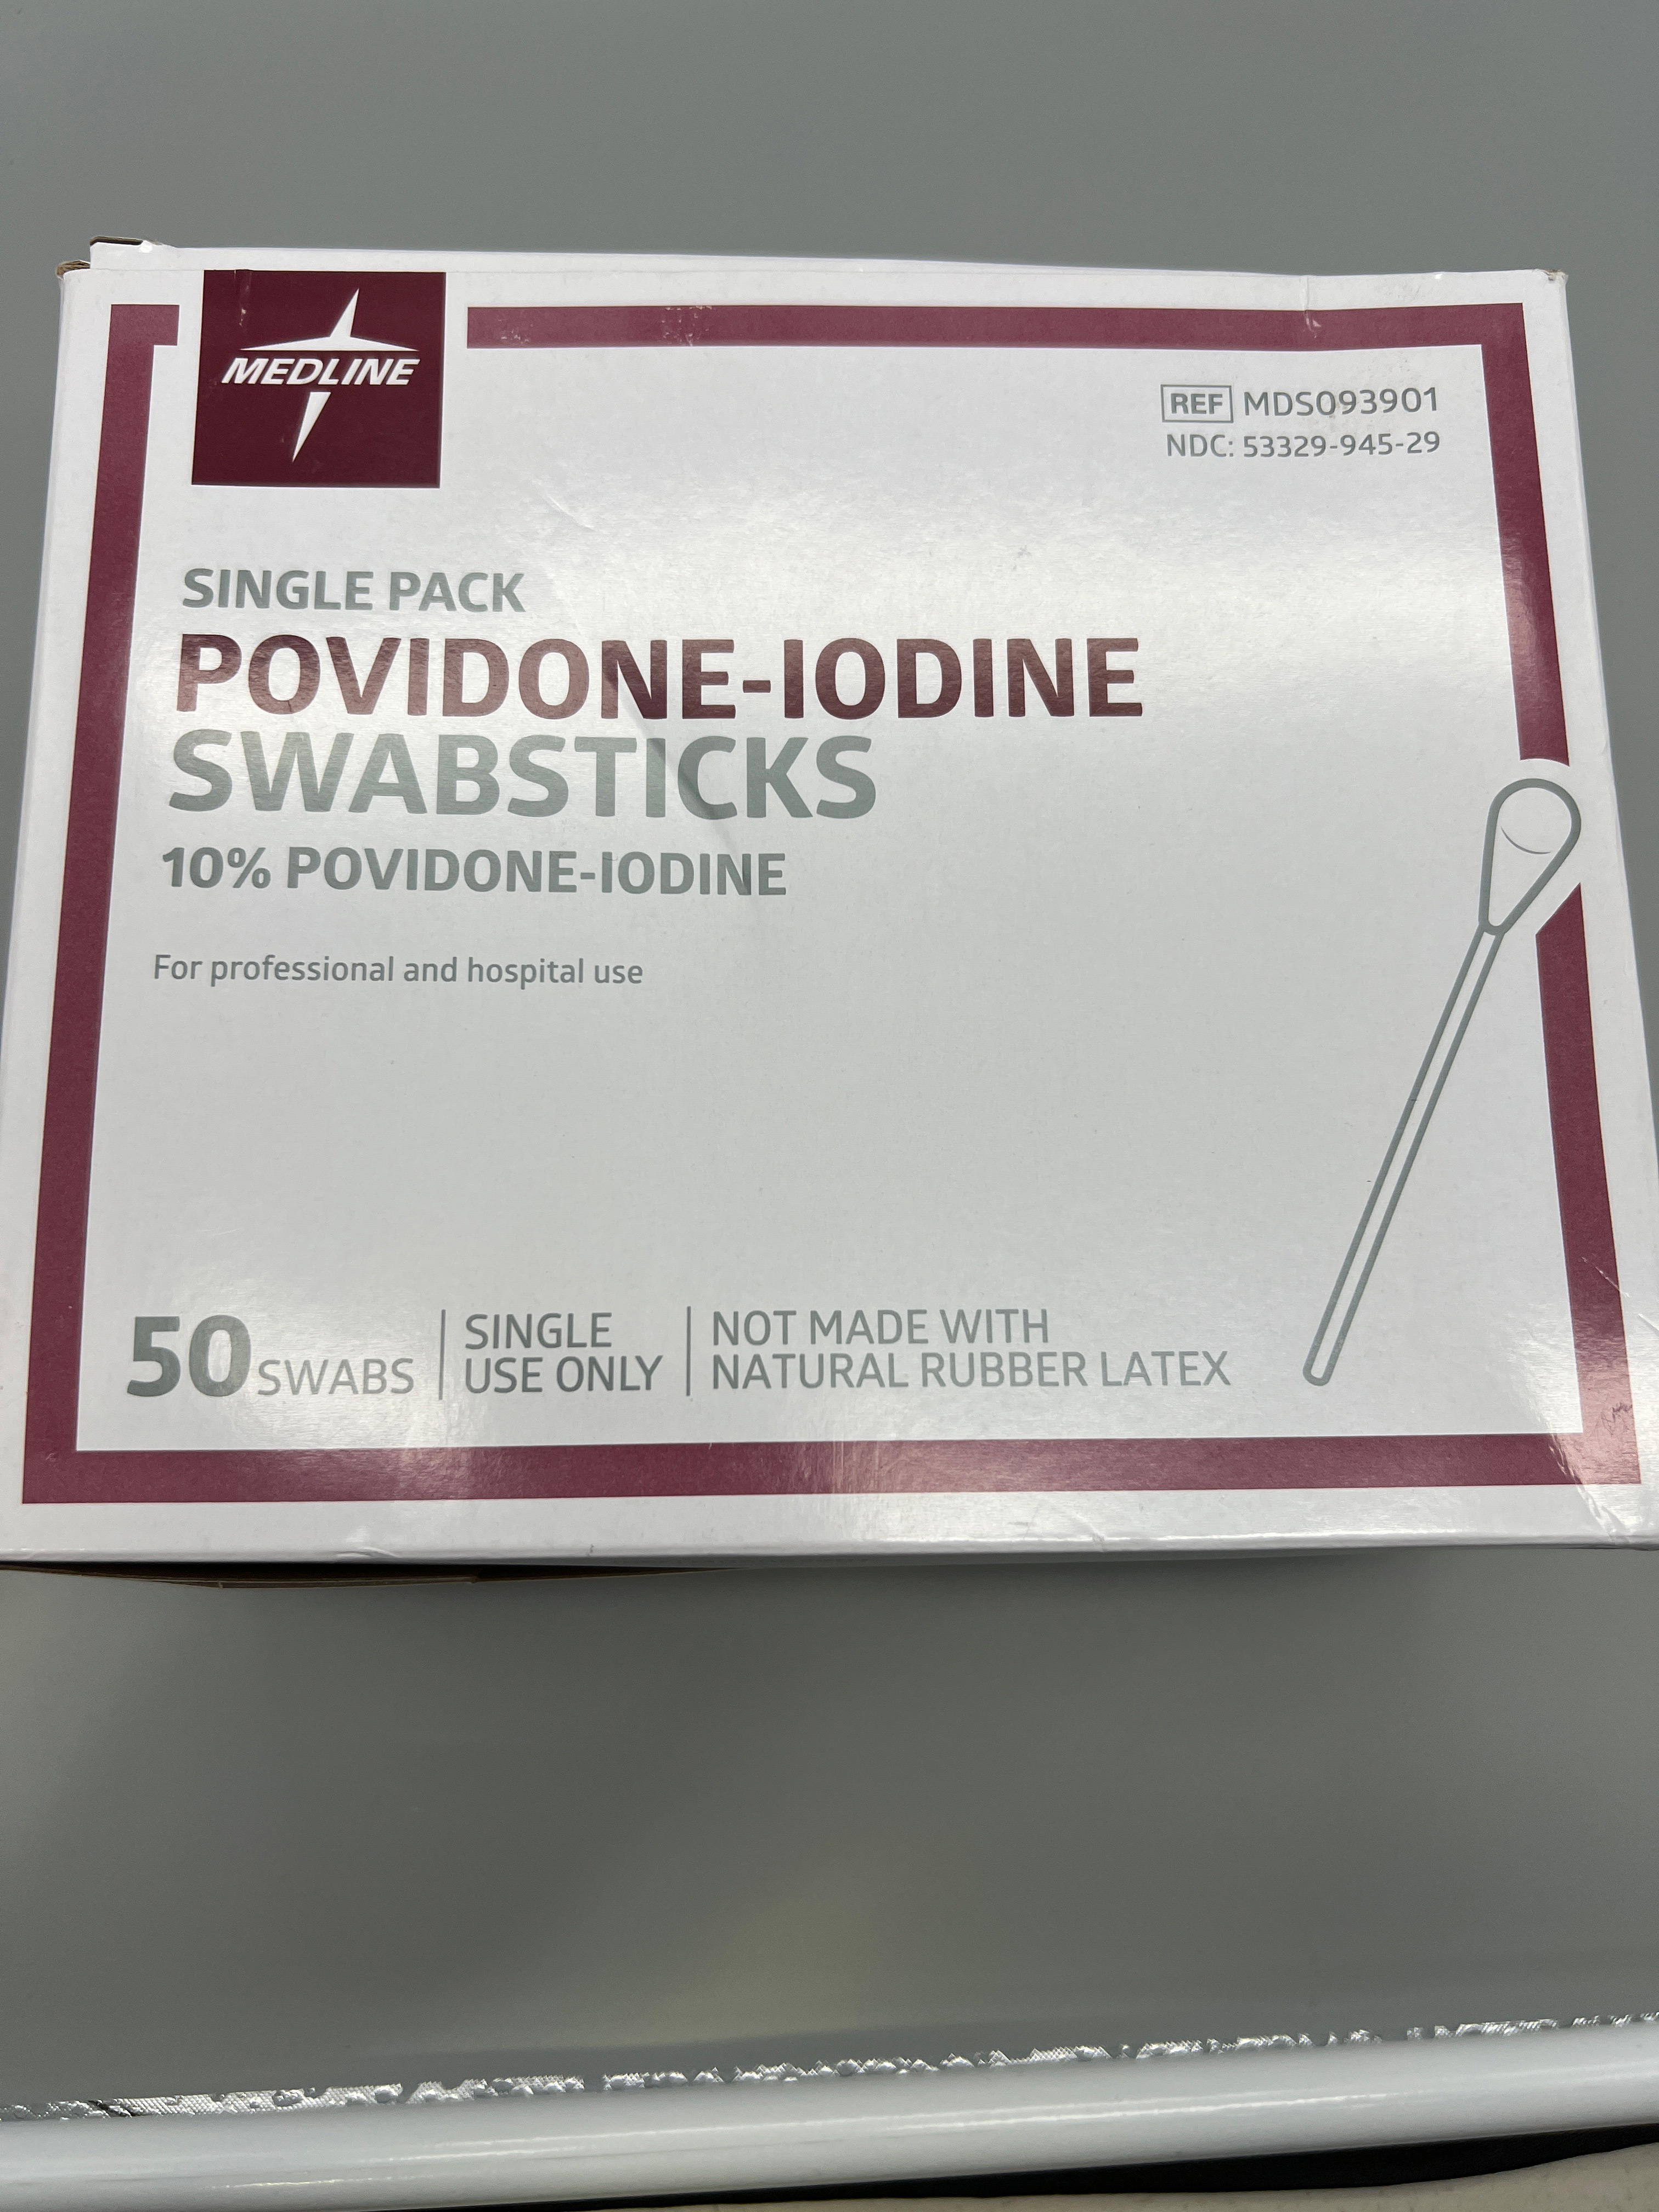 SINGLE PACK POVIDONE- IODINE SWABSTICKS 10% POVIDONE - IODINE